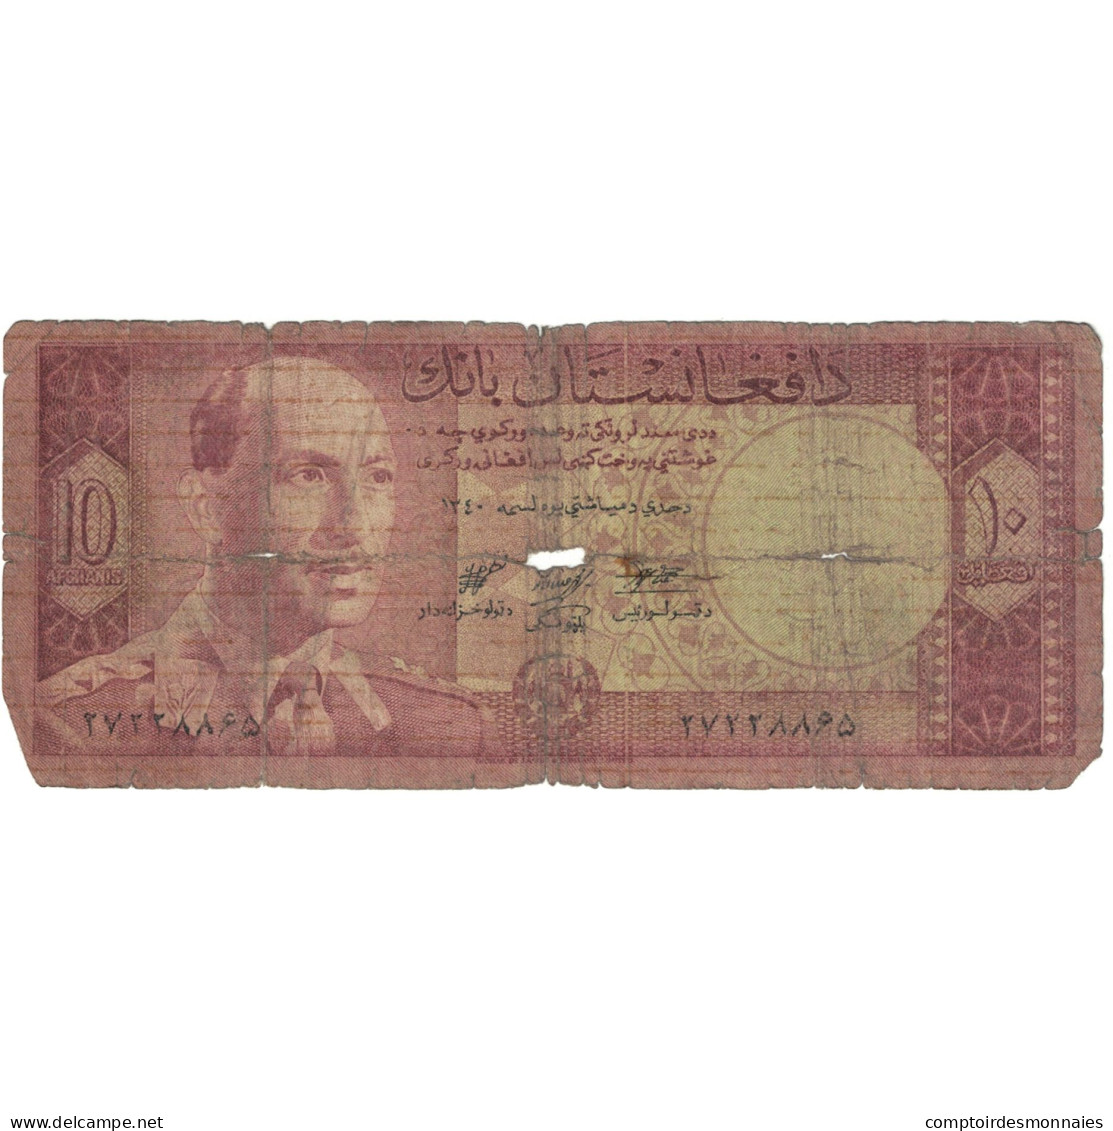 Billet, Afghanistan, 10 Afghanis, SH1340 (1961), KM:37a, AB - Afghanistan